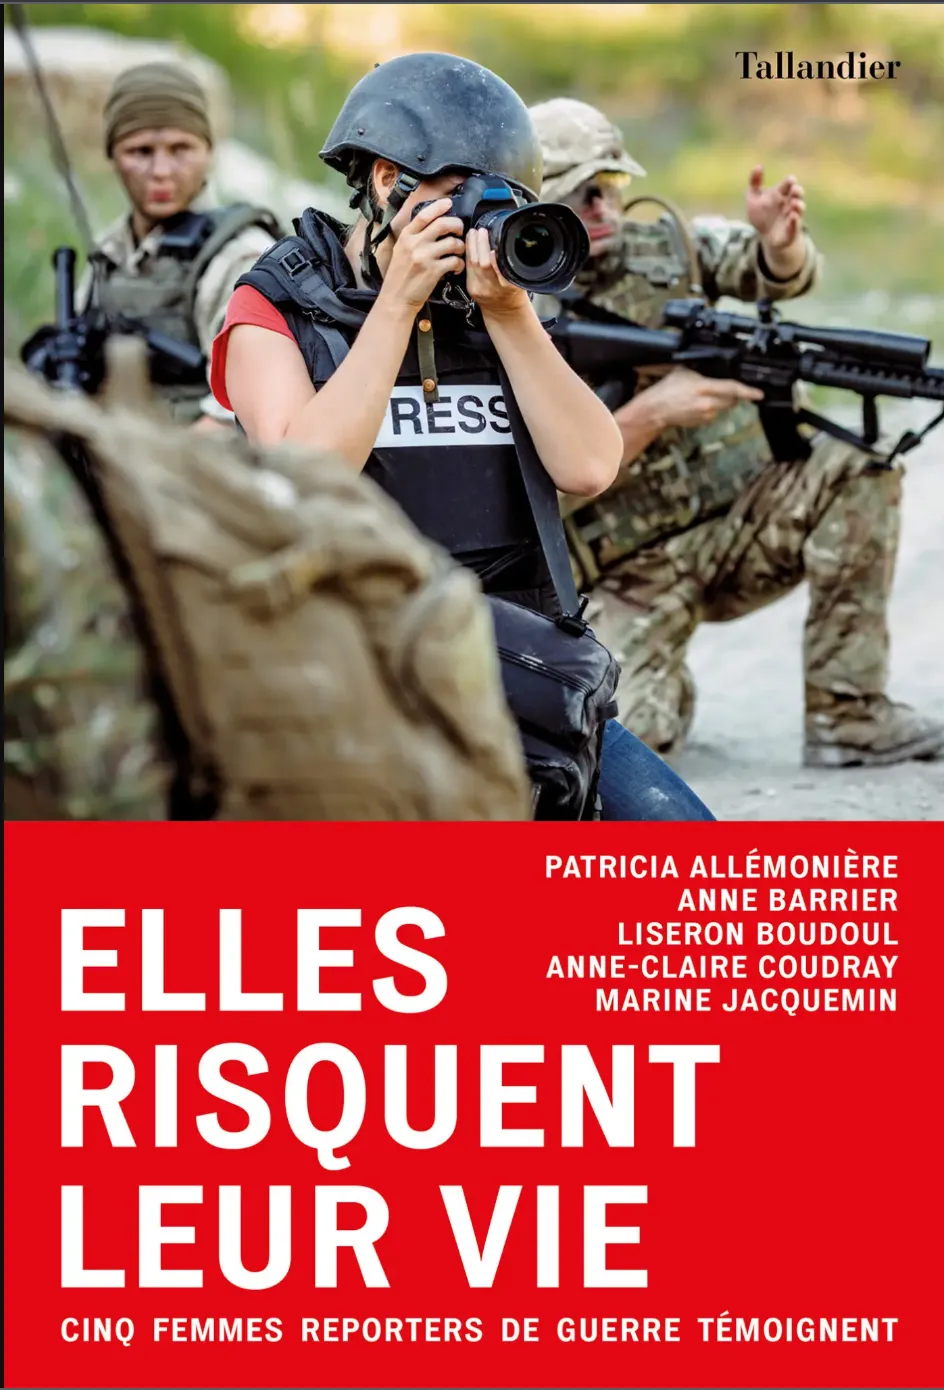 Elles risquent leur vie. Cinq femmes reporters de guerre témoignent, Collectif, Éditions Tallandier, 2019.